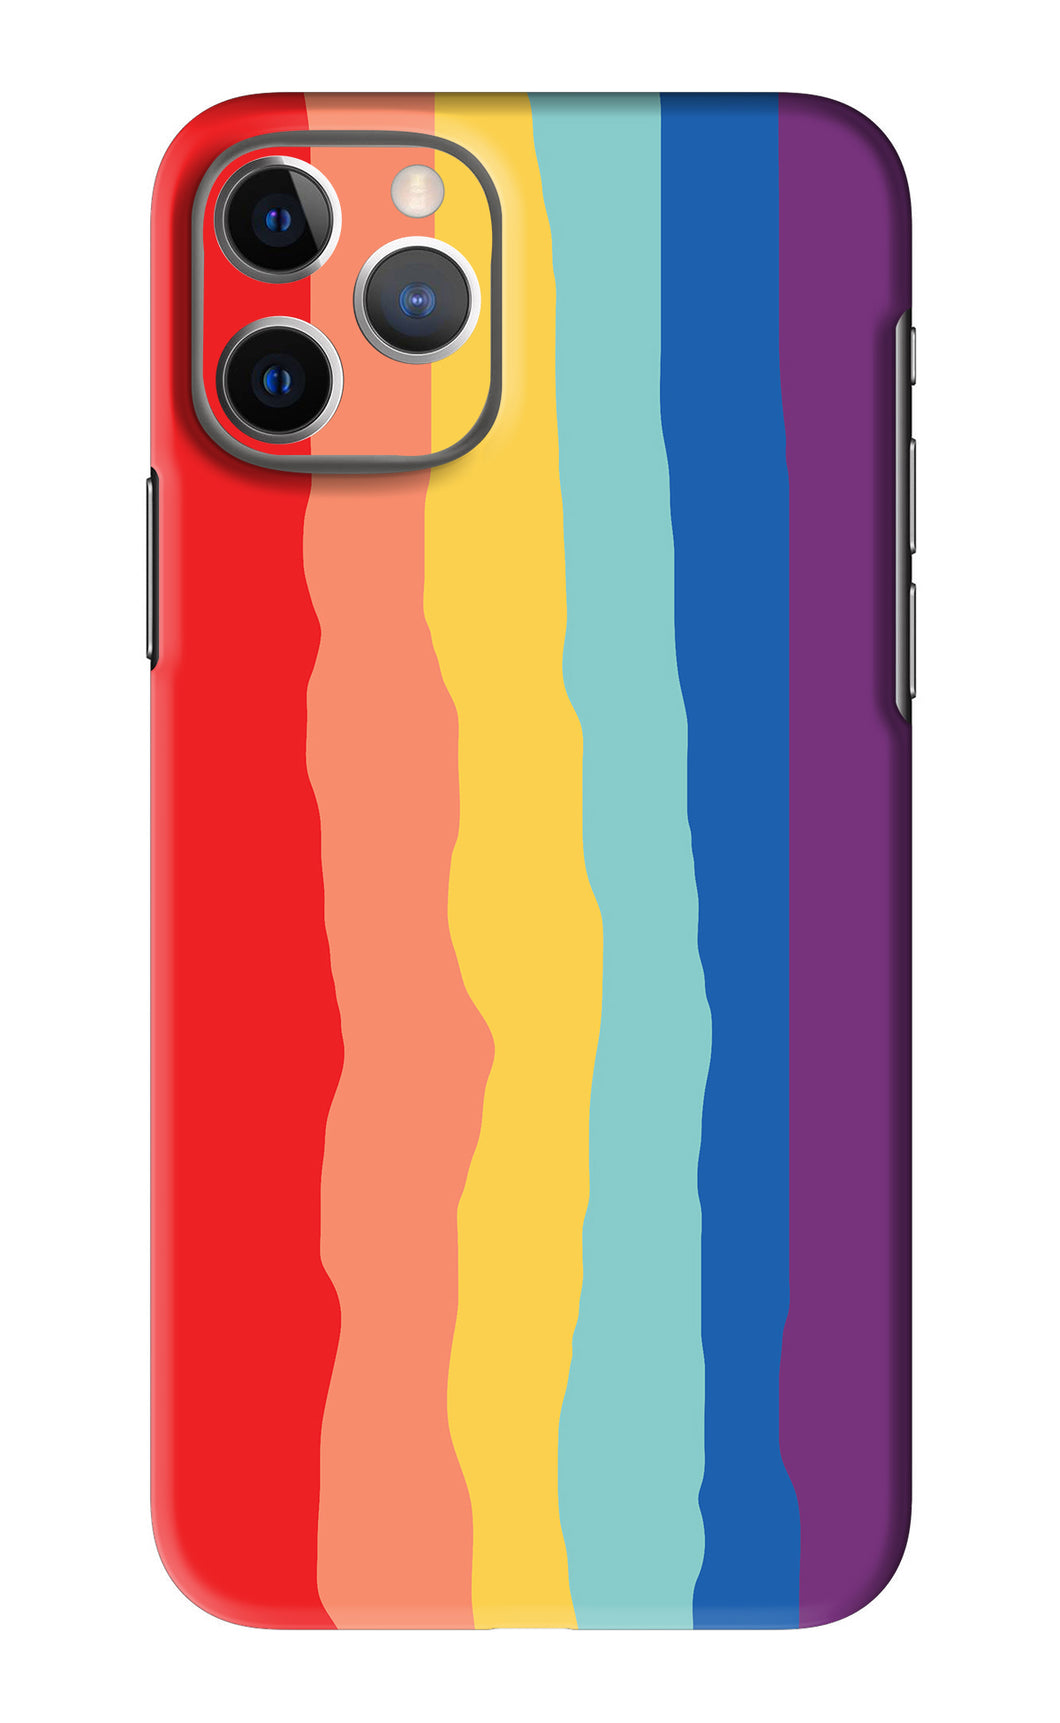 Rainbow iPhone 11 Pro Back Skin Wrap